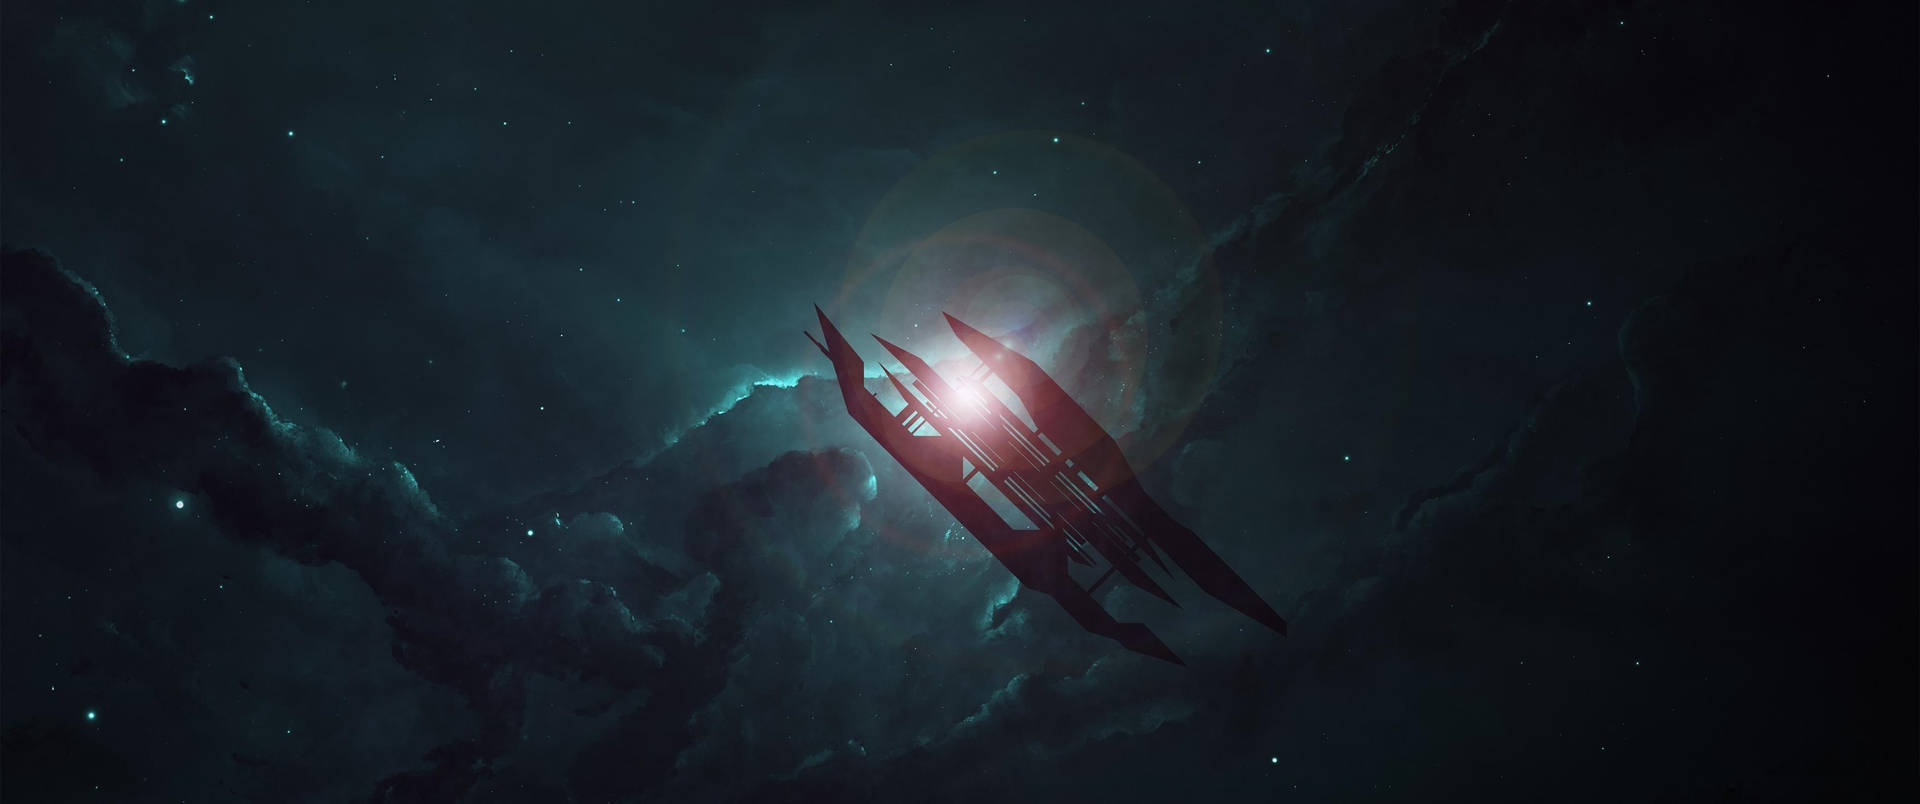 Spaceship In The Dark Background